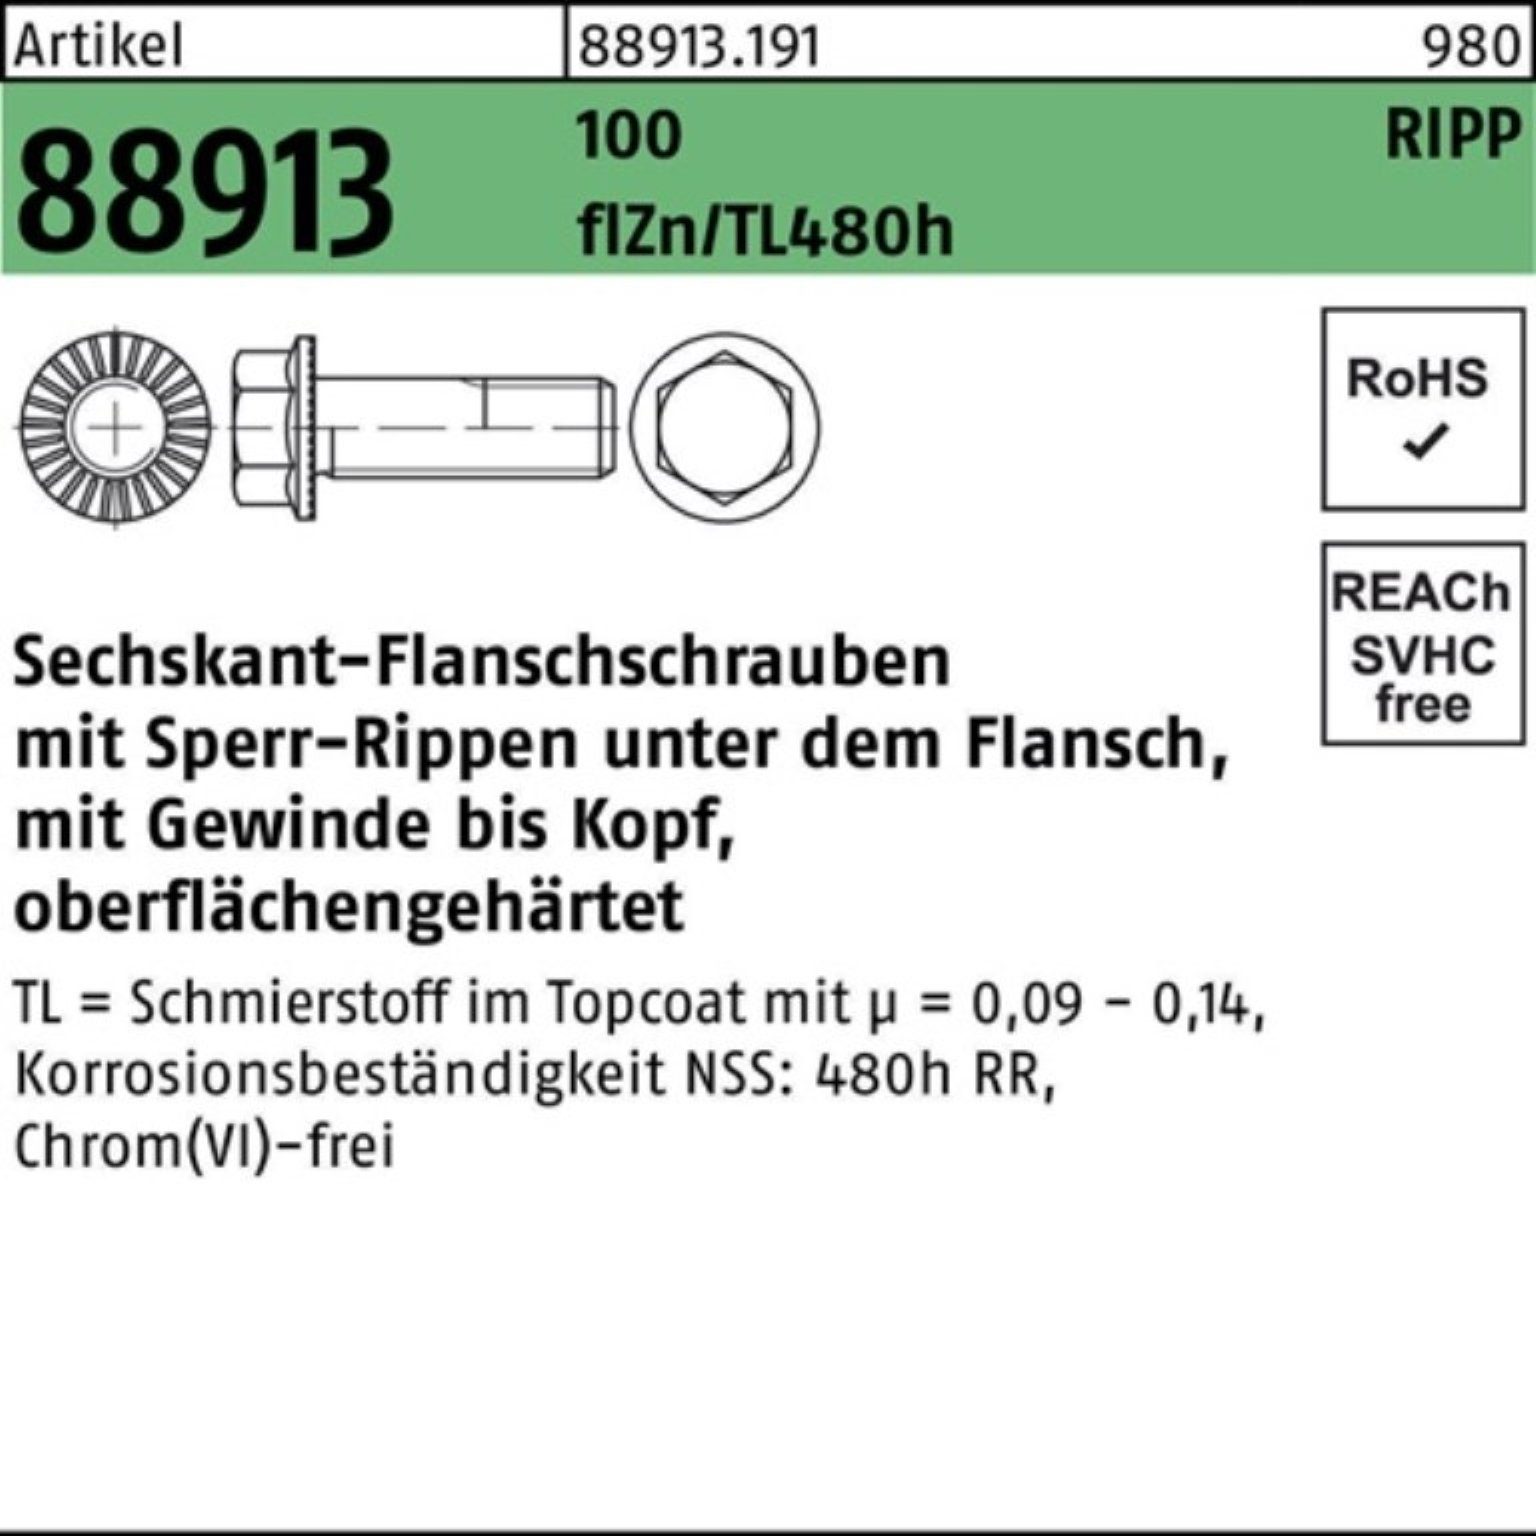 Reyher Schraube 100er Pack Sechskantflanschschraube R 88913 Sperr-Ripp VG M12x25 100 f